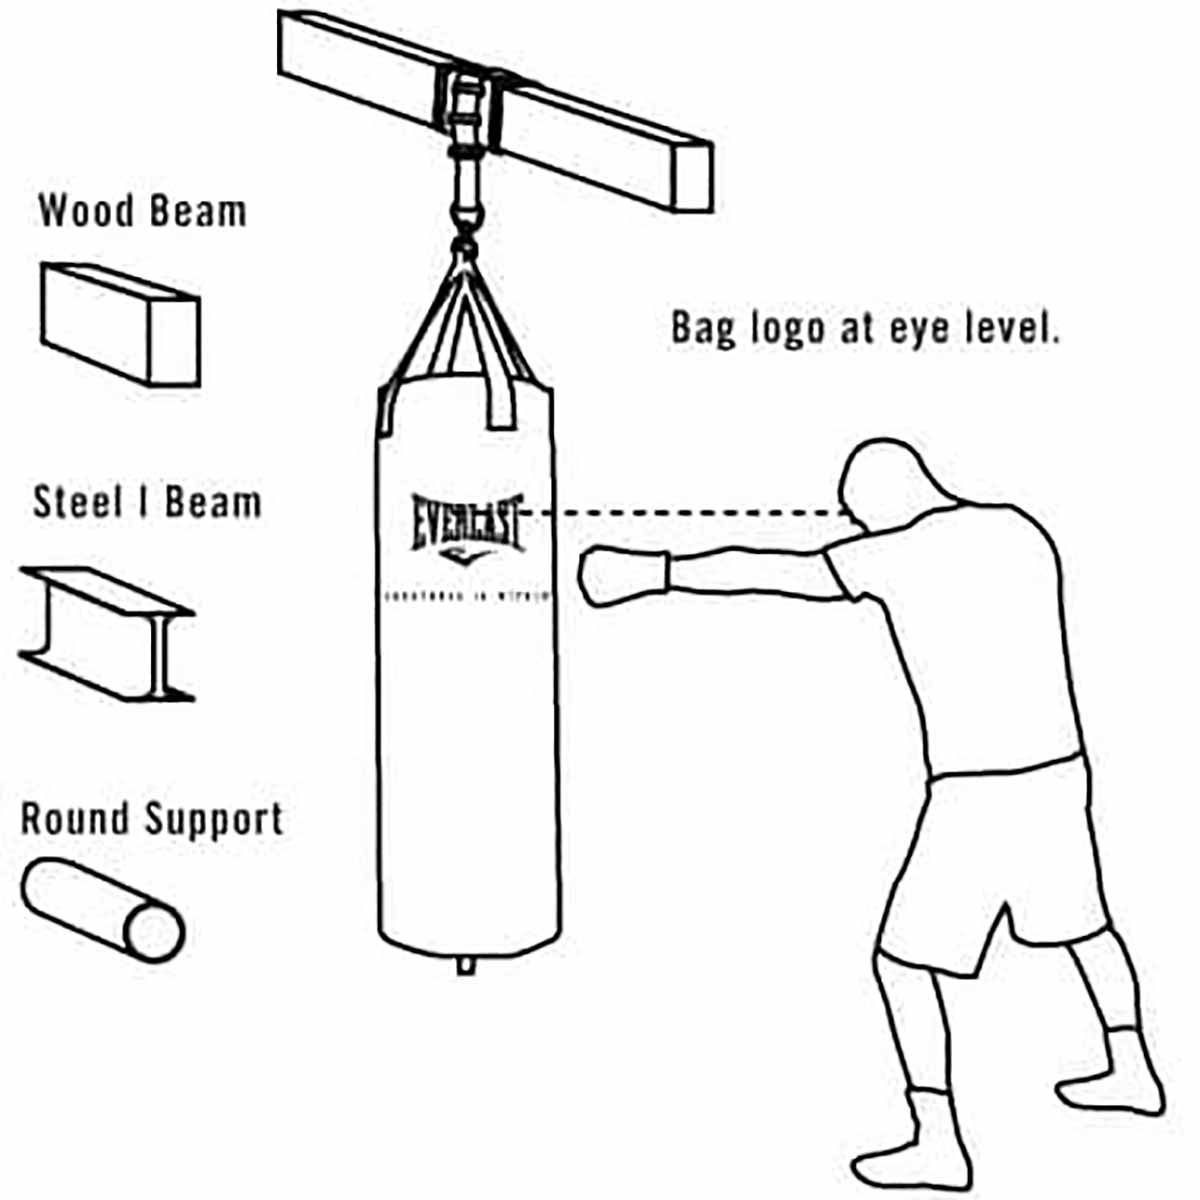 Bag Hanger - Punching Bag - Boxing Equipment